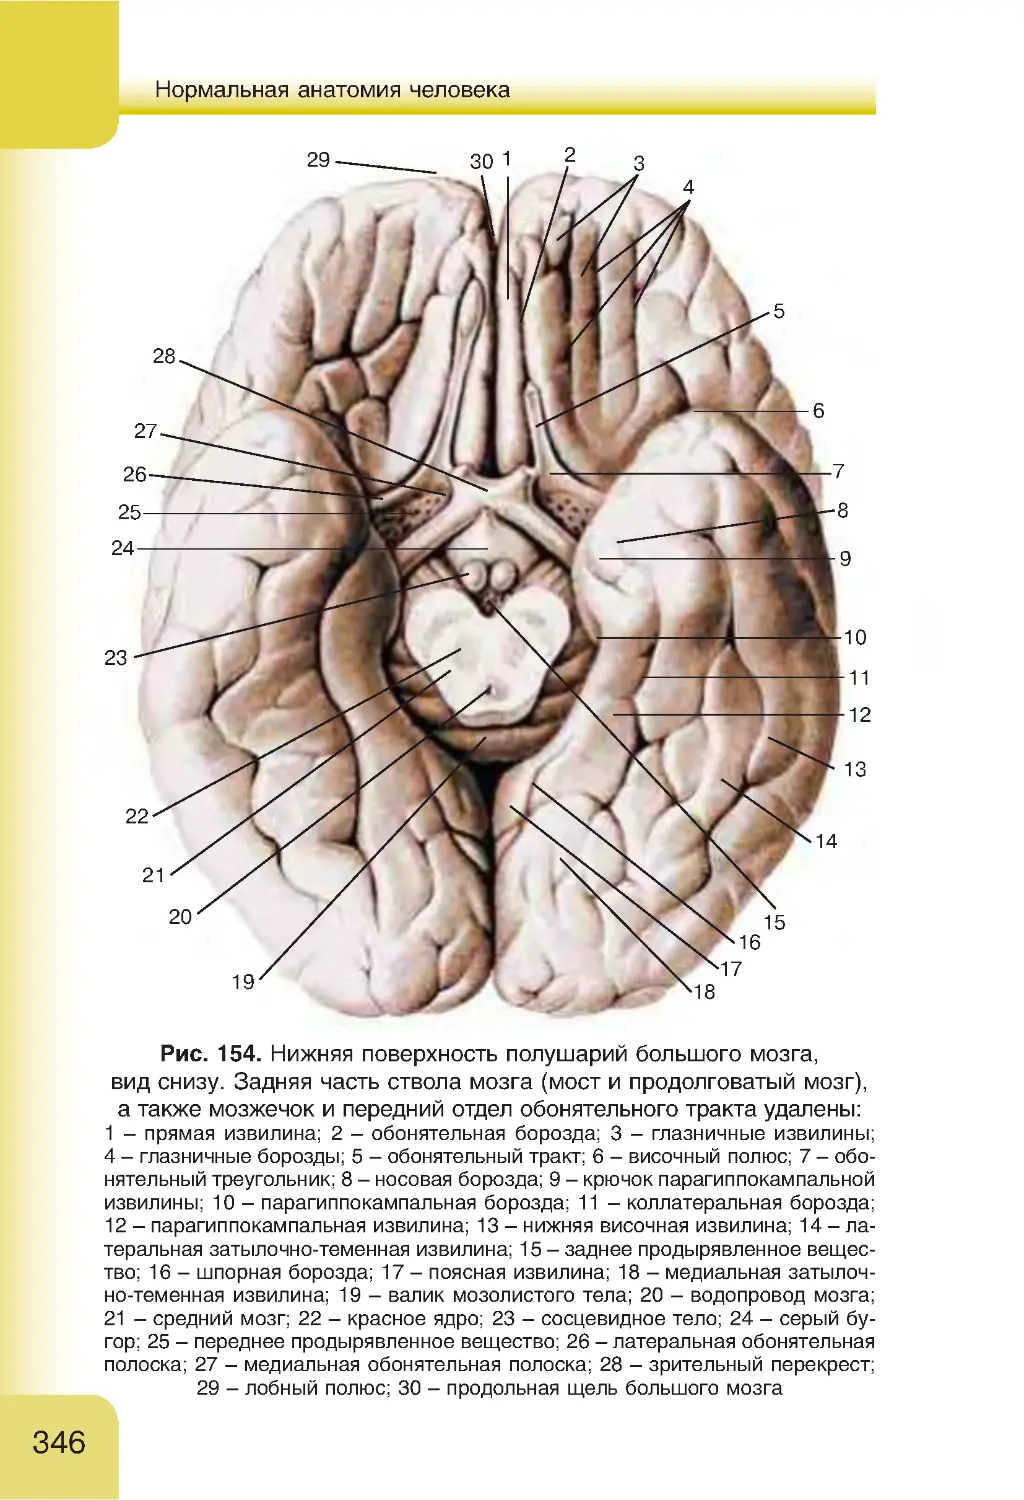 Поверхность головного мозга имеет. Борозды и извилины головного мозга анатомия. Борозды и извилины нижней поверхности полушария. Борозды и извилины нижней поверхности полушария большого мозга. Нижняя поверхность конечного мозга анатомия.